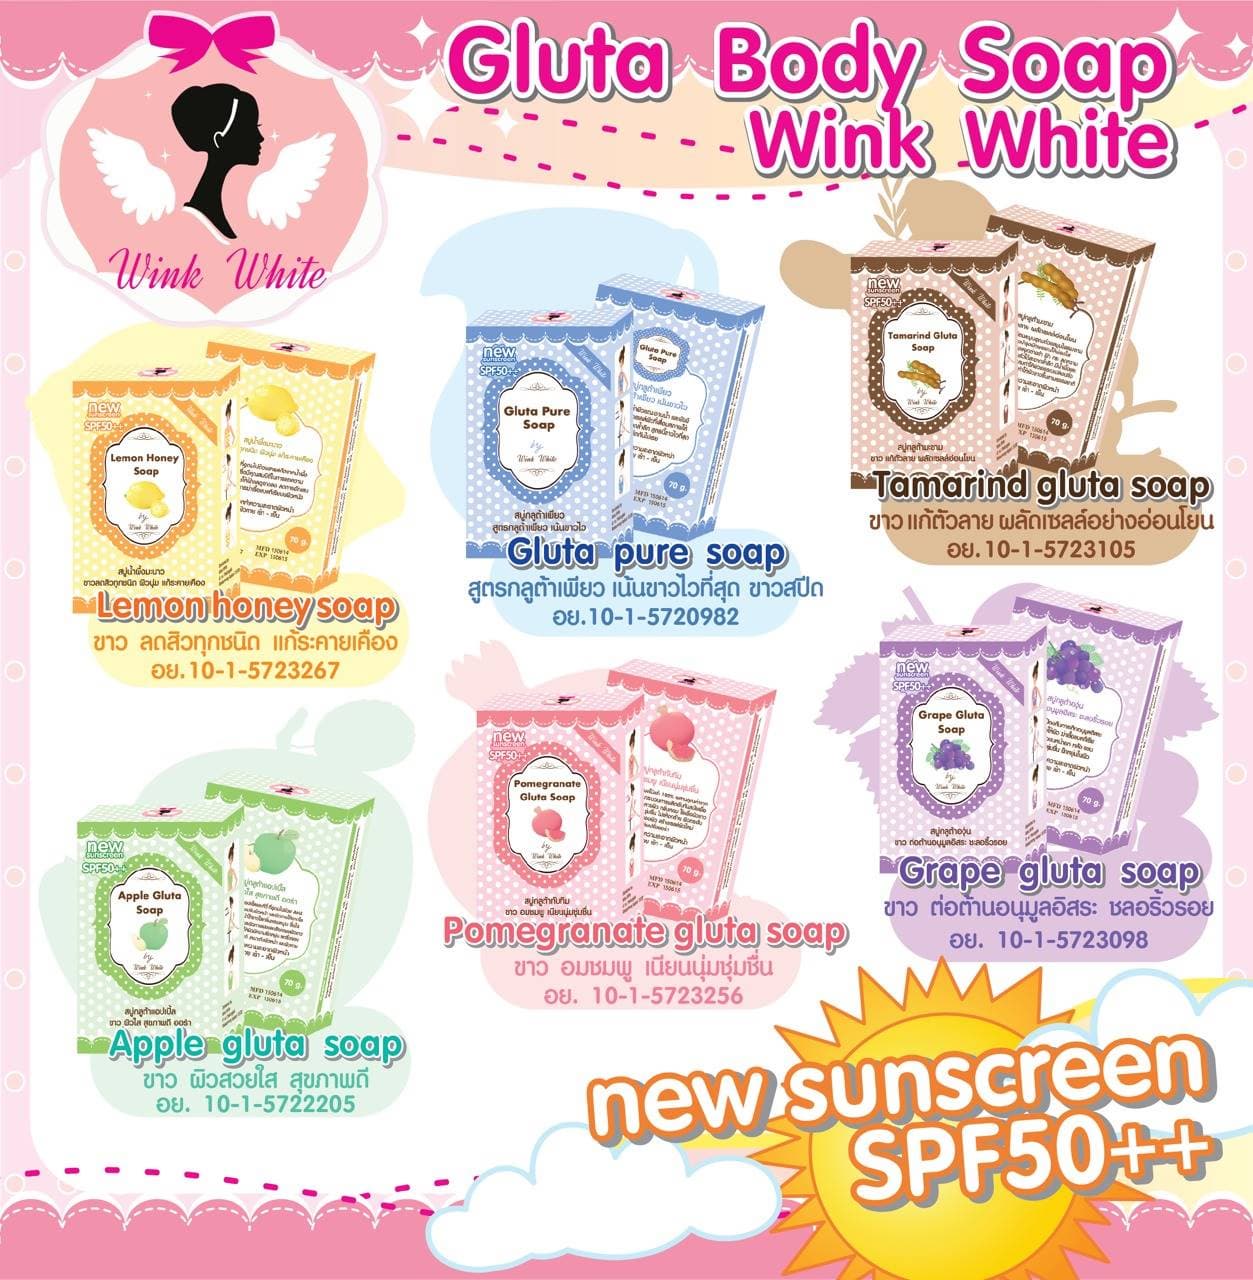 Gluta pure soap Thai brand wink white